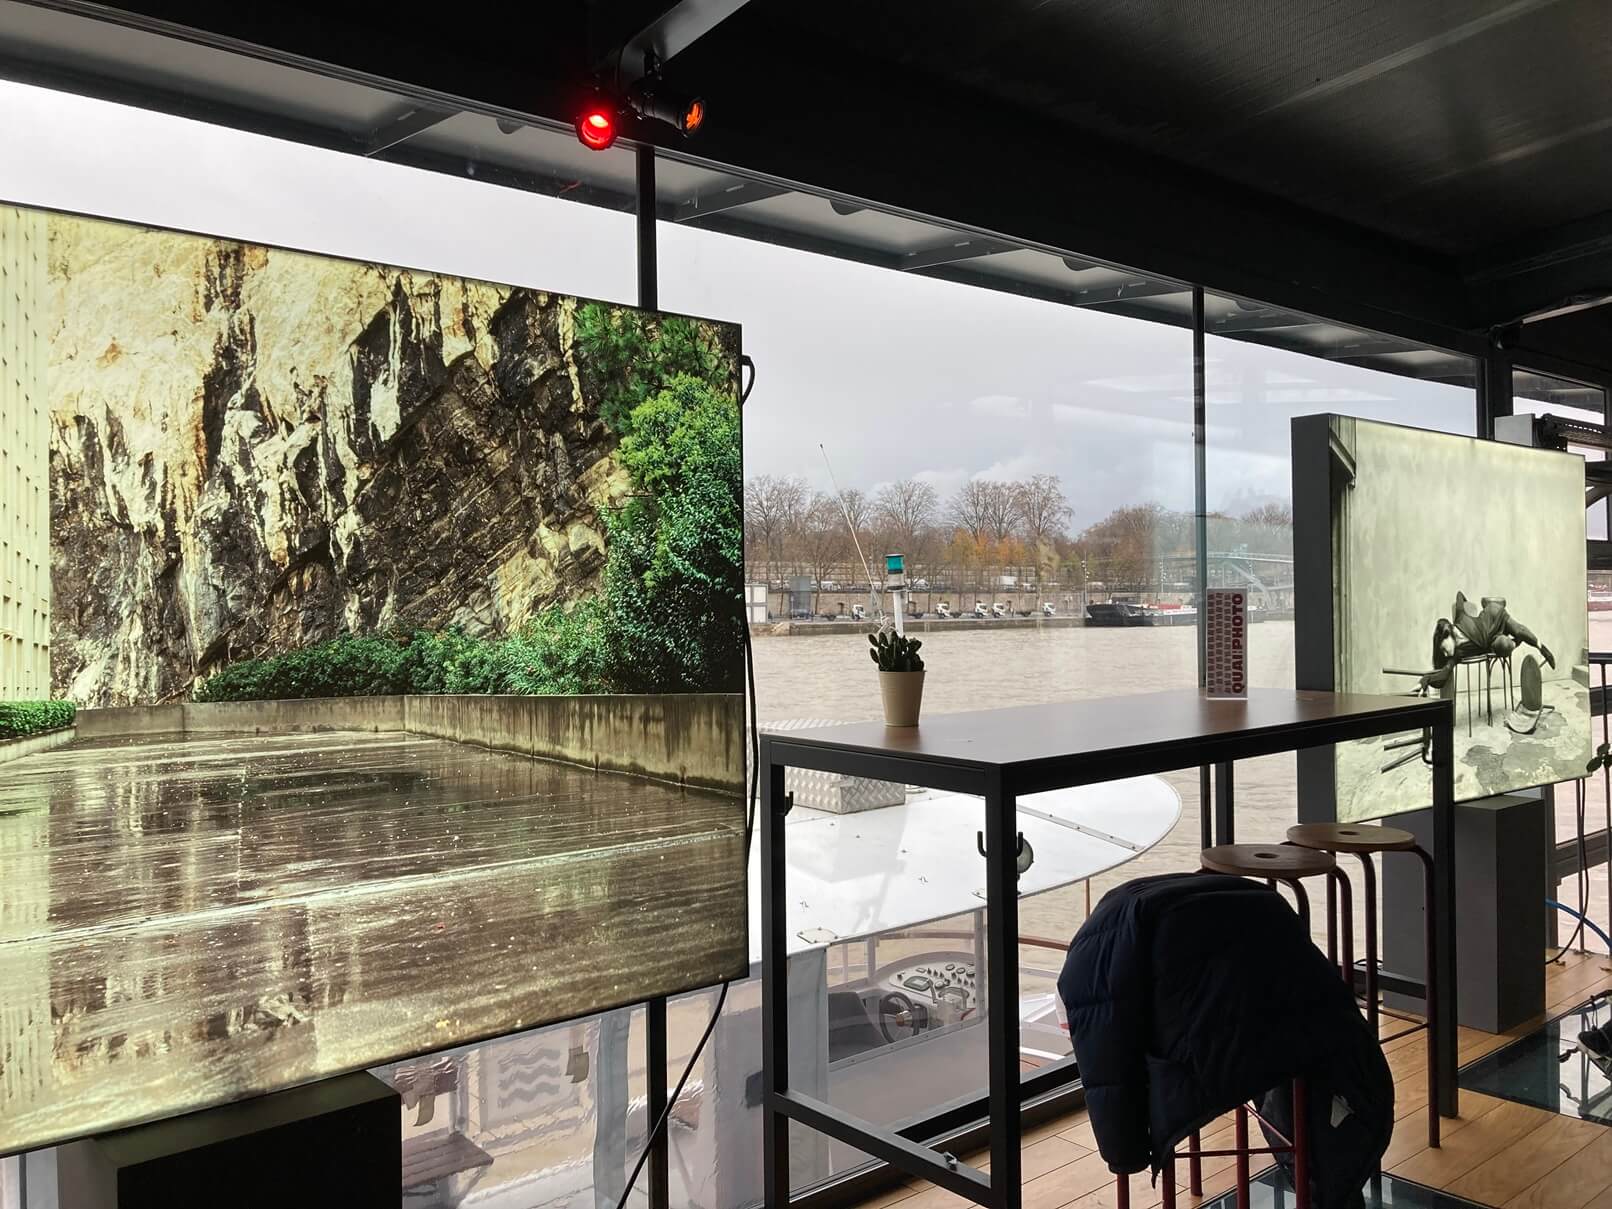 パリ最新情報「パリの新たなアートスポット、セーヌ川に浮かぶ水上ギャラリー」